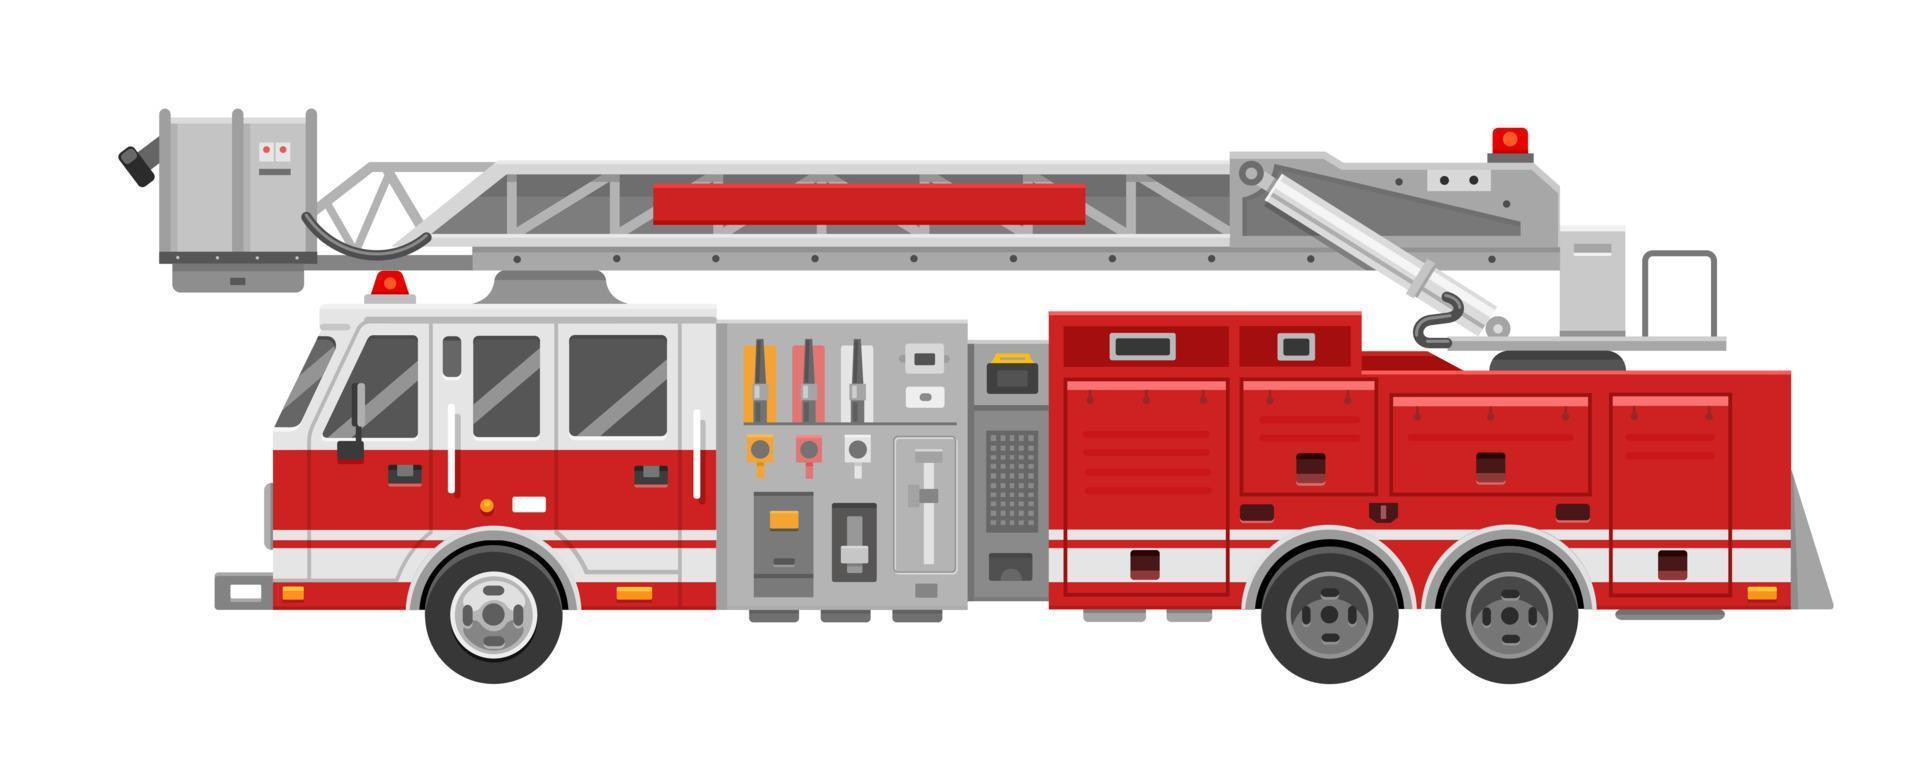 carro de bombeiros. caminhão de bombeiros vermelho para apagar um incêndio em um estilo simples. ilustração em vetor de um veículo de emergência em um fundo branco.